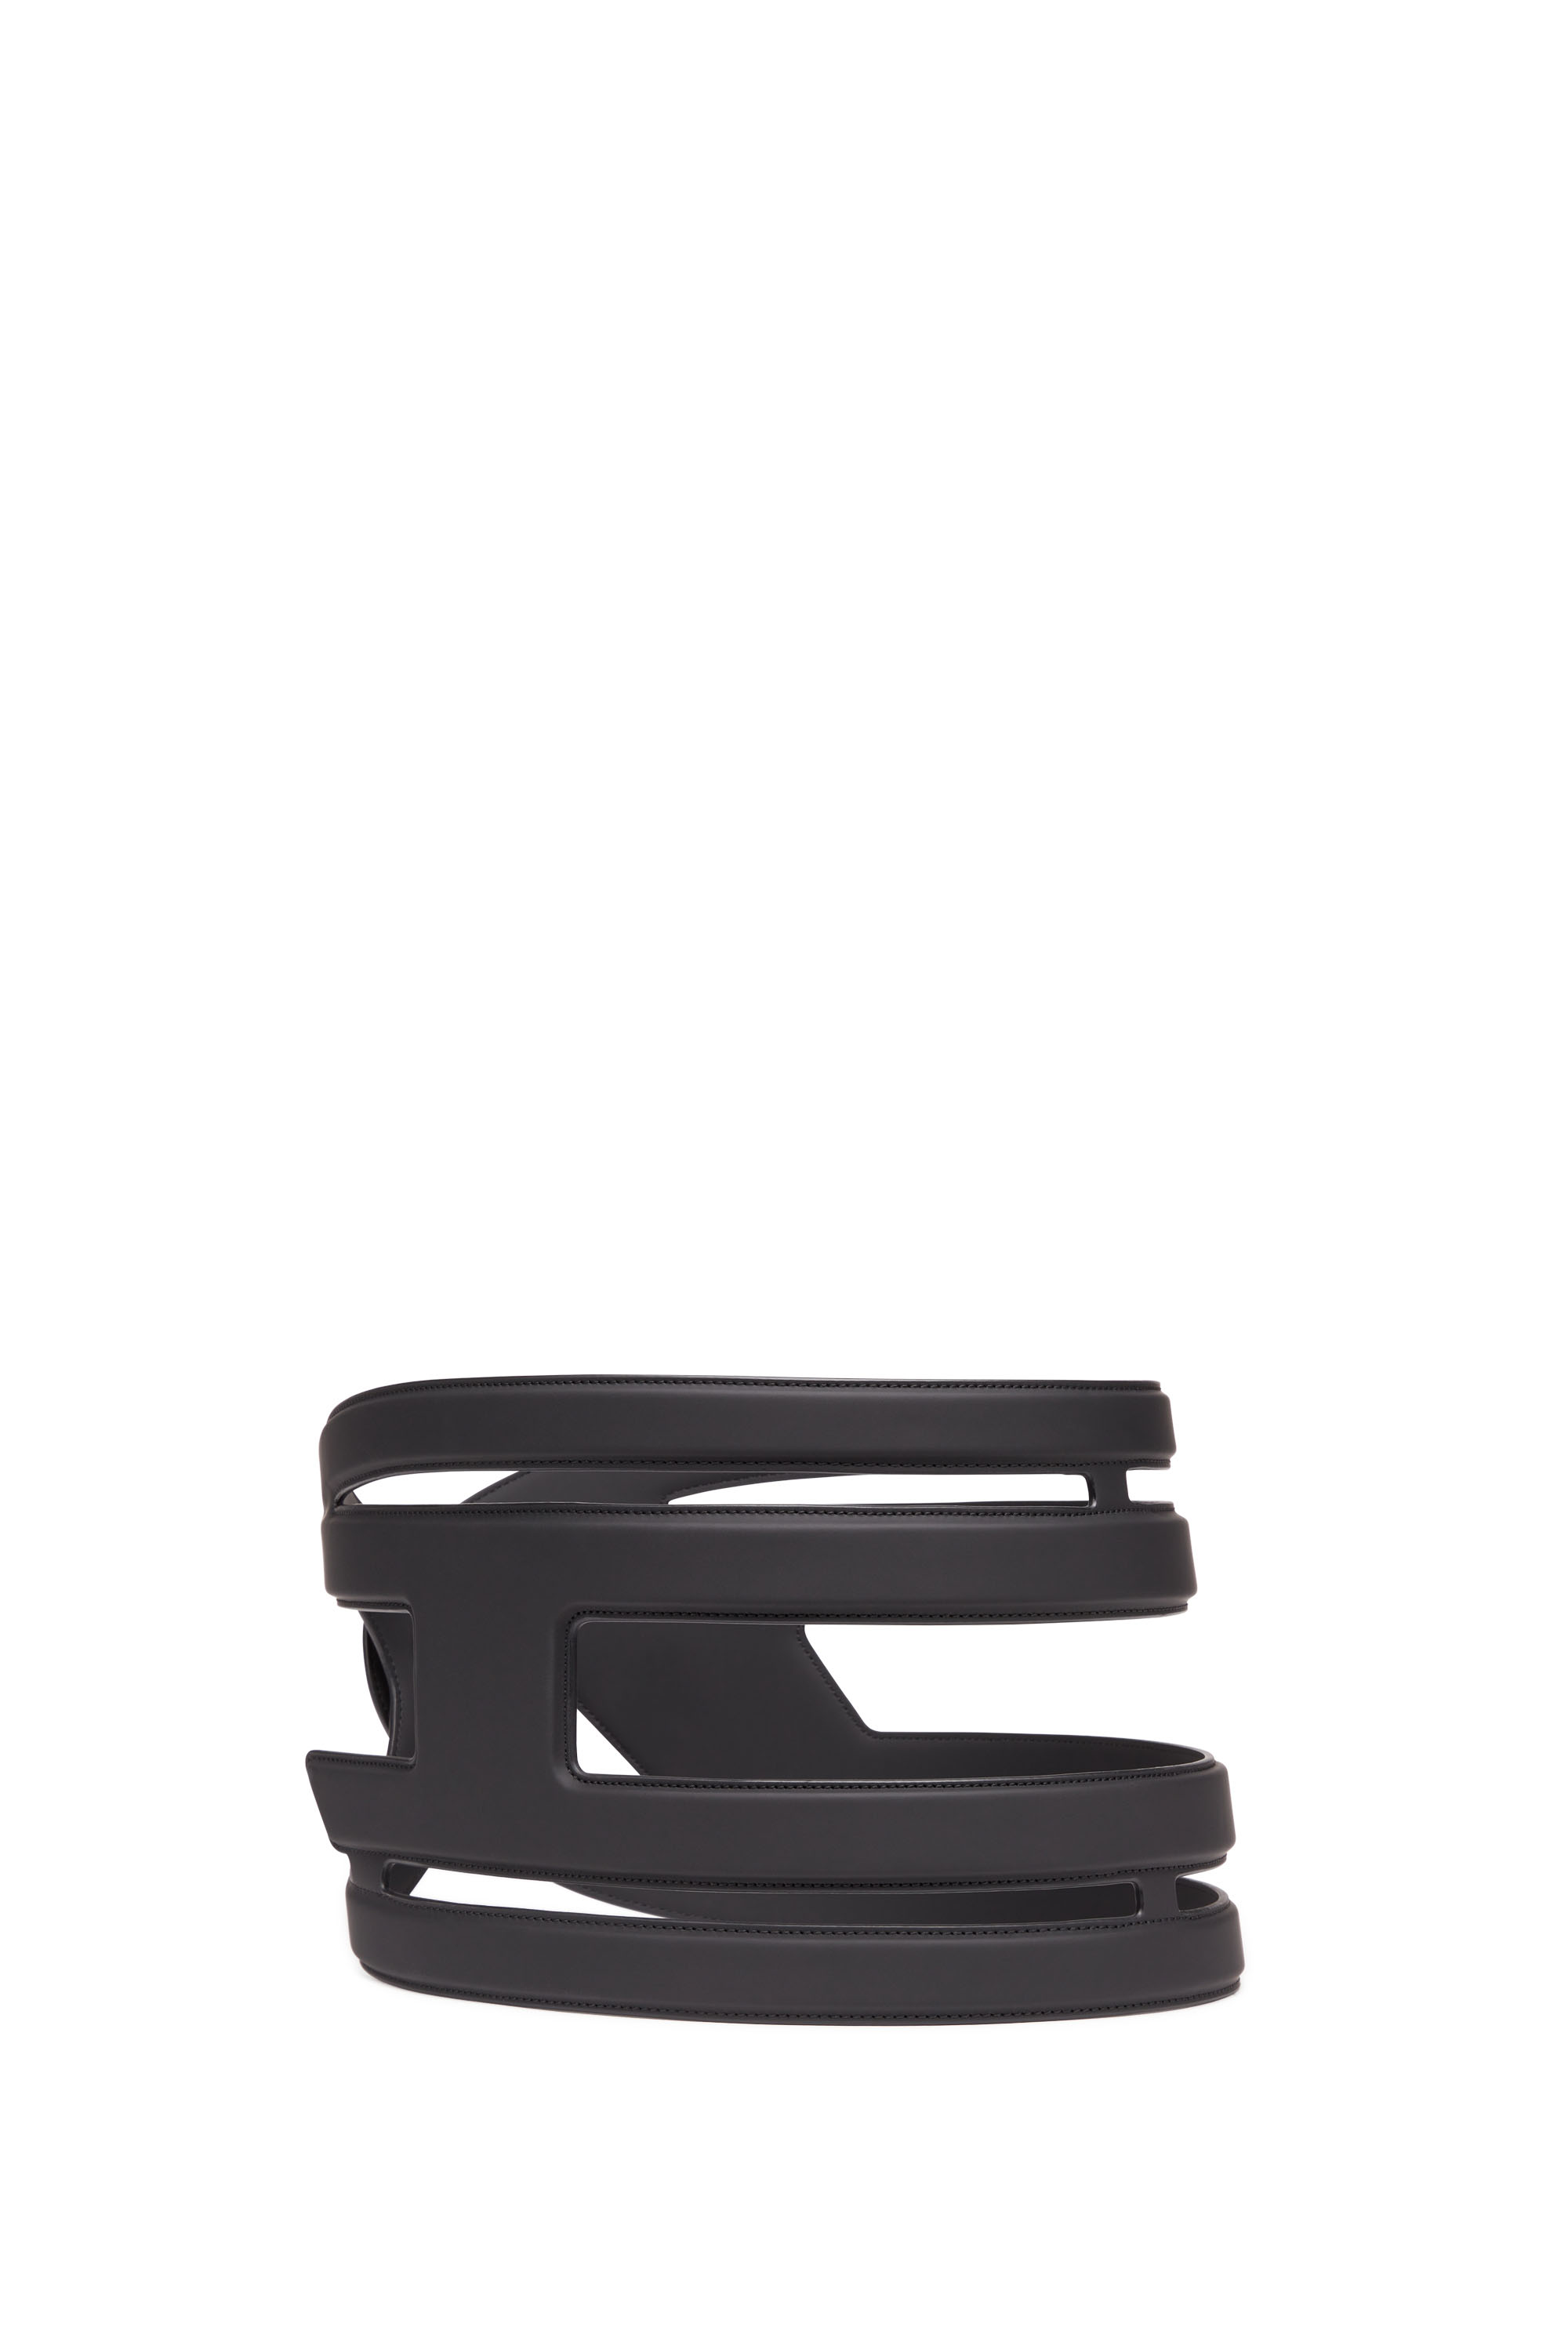 Diesel - Jupe ceinture Oval D - Ceintures - Femme - Noir